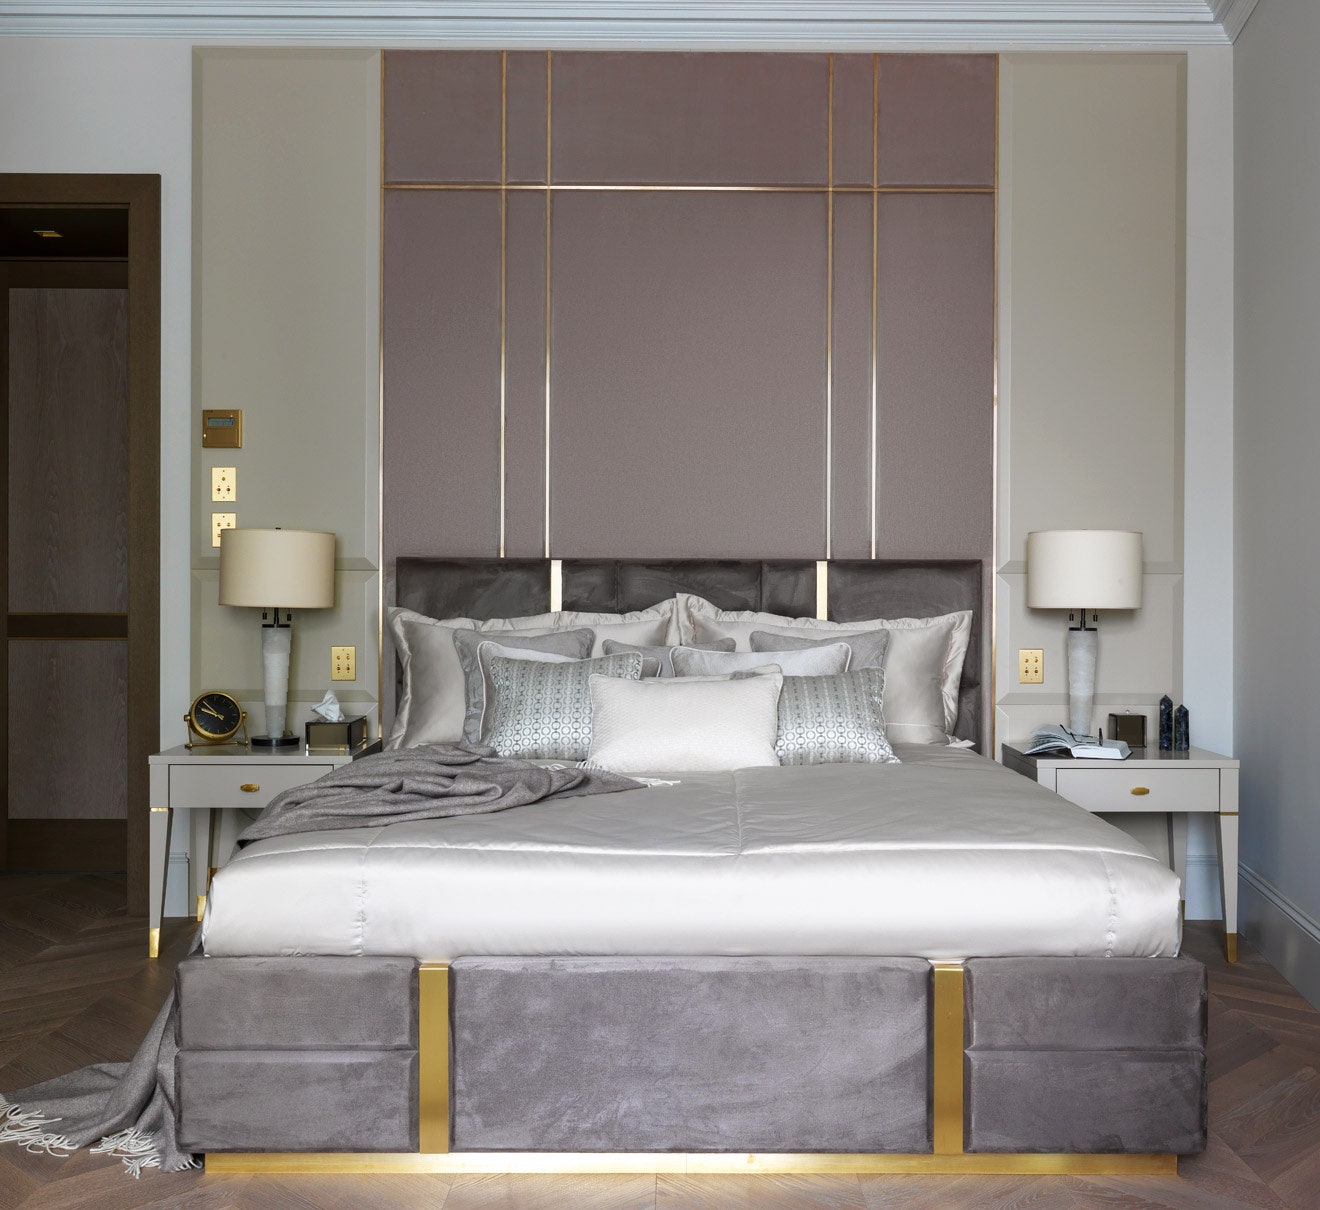 Спальня оформлена со сдержанной роскошью весь смысл в фактуре и текстуре материалов.